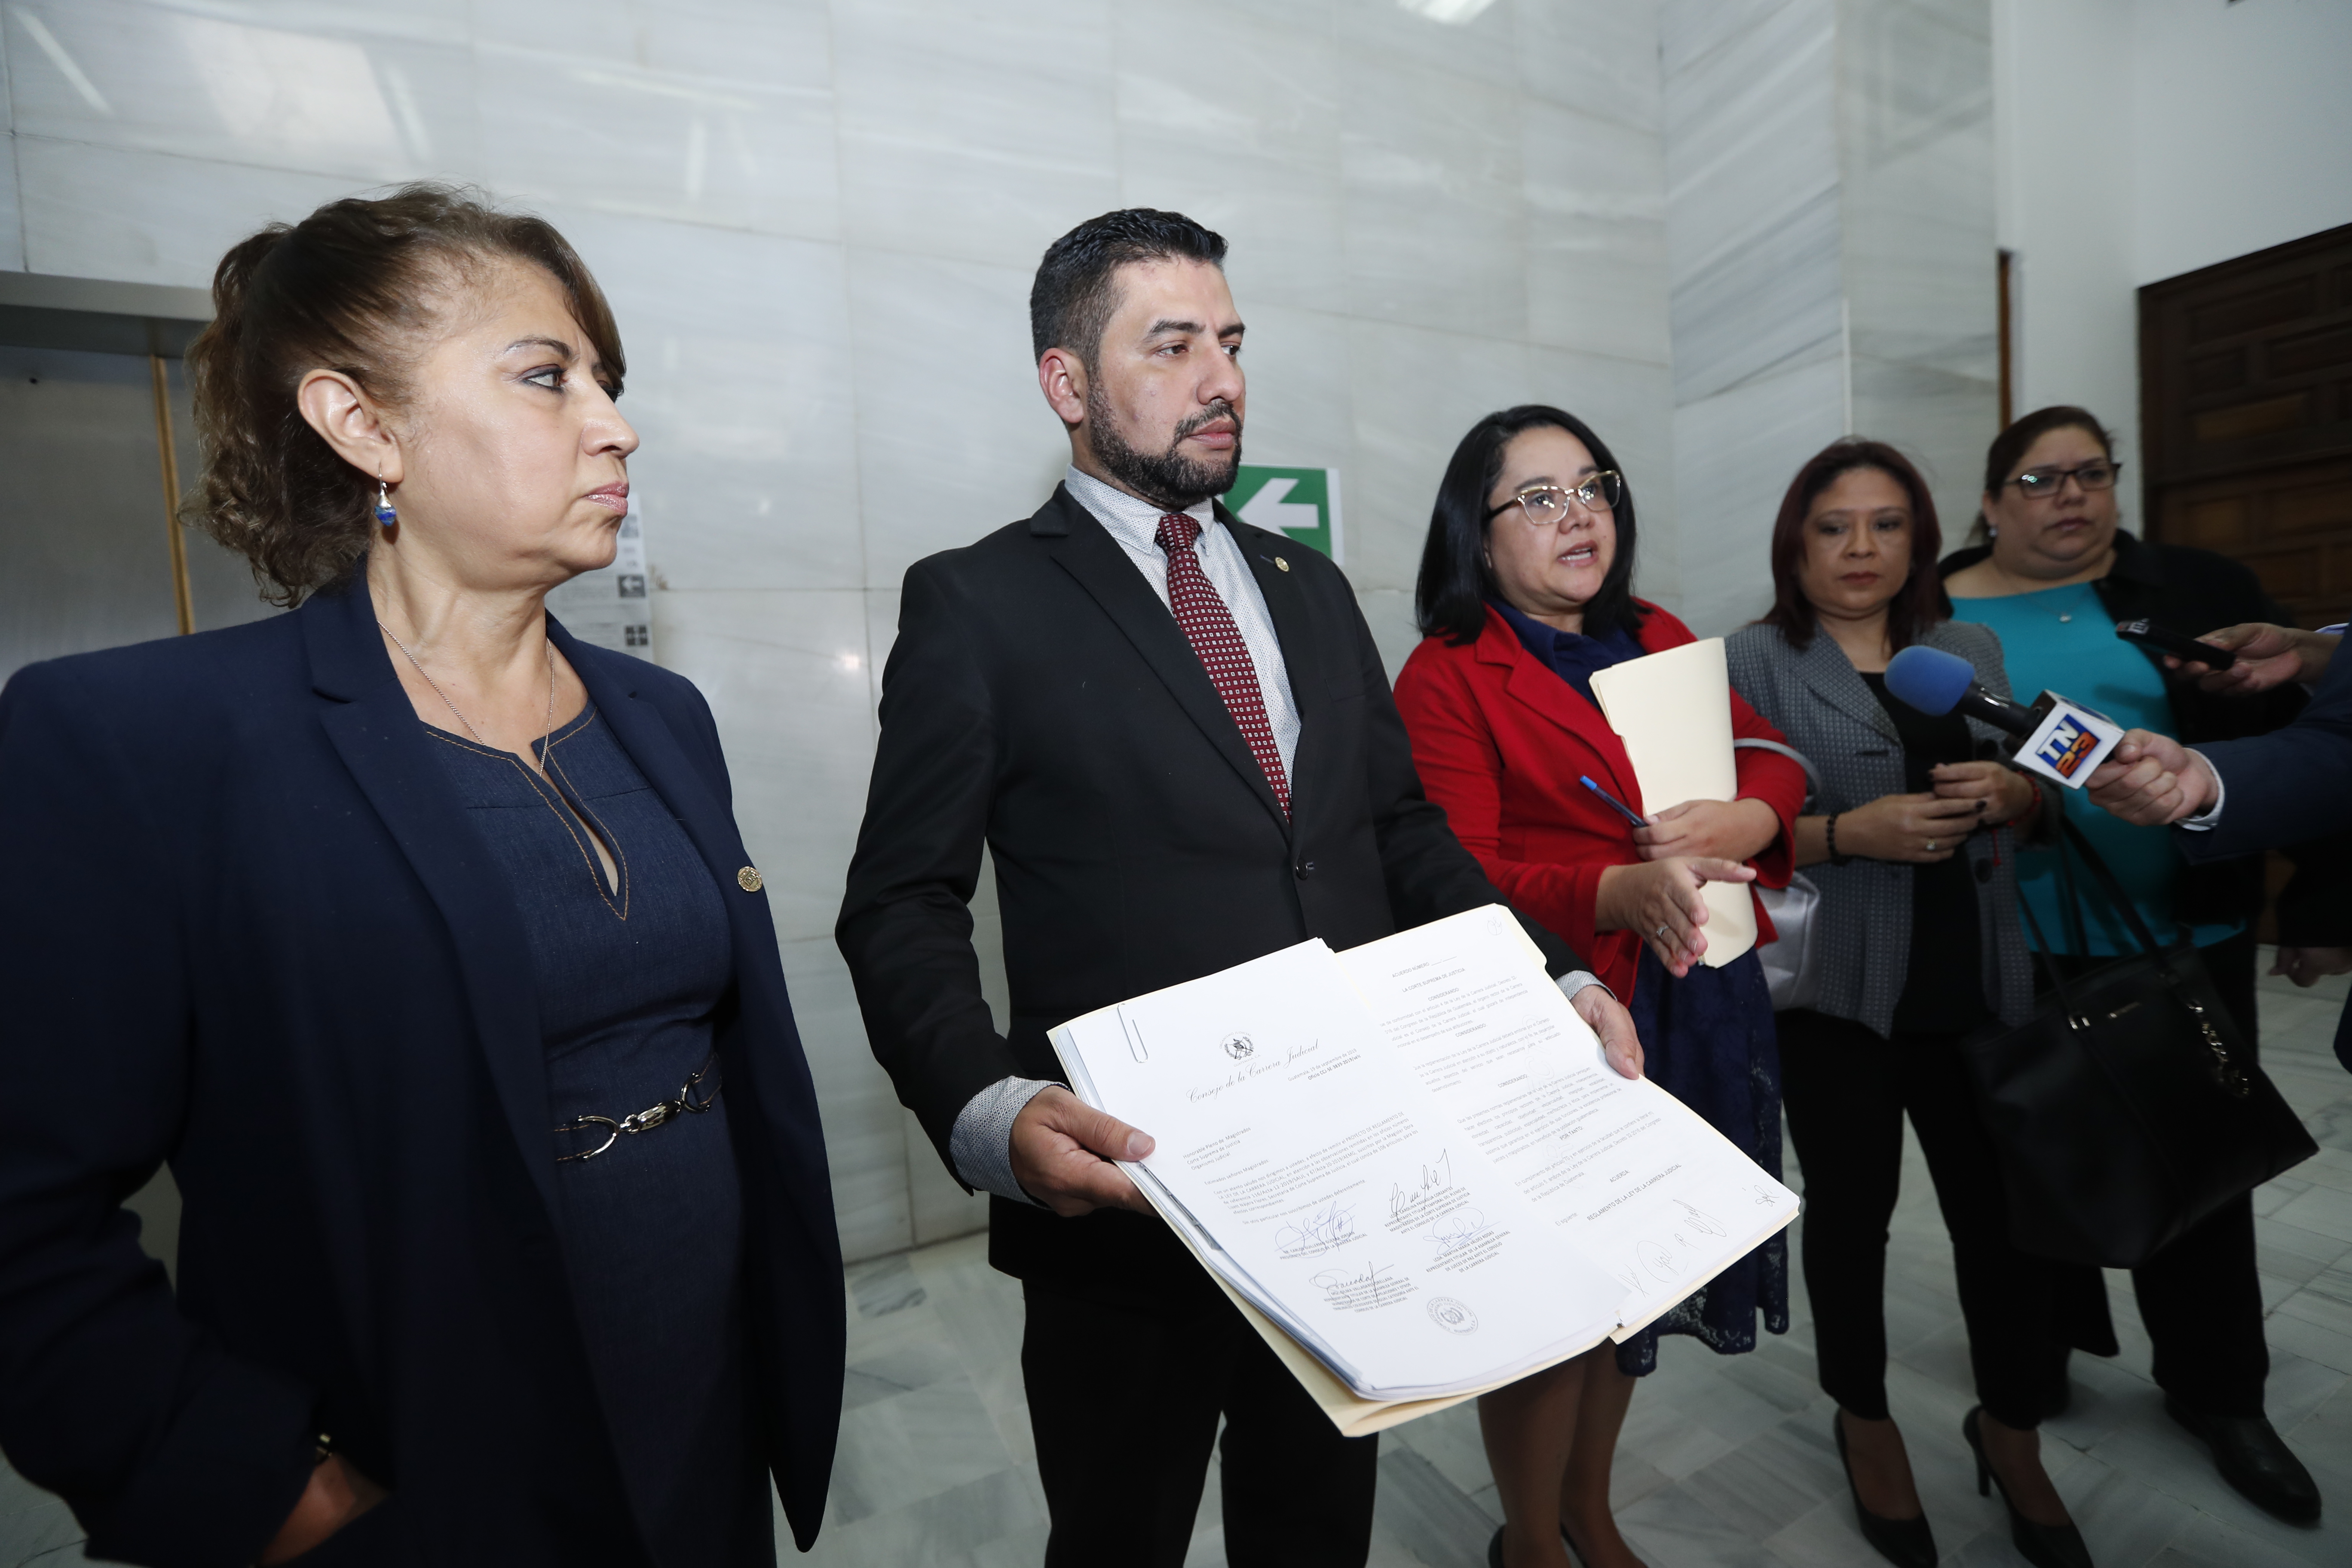 El Consejo de la Carrera Judicial entregó el proyecto de reglamento para la evaluación de jueces y magistrados a la Corte Suprema de Justicia, el 19 de septiembre de 2019. (Foto Prensa Libre: Hemeroteca).